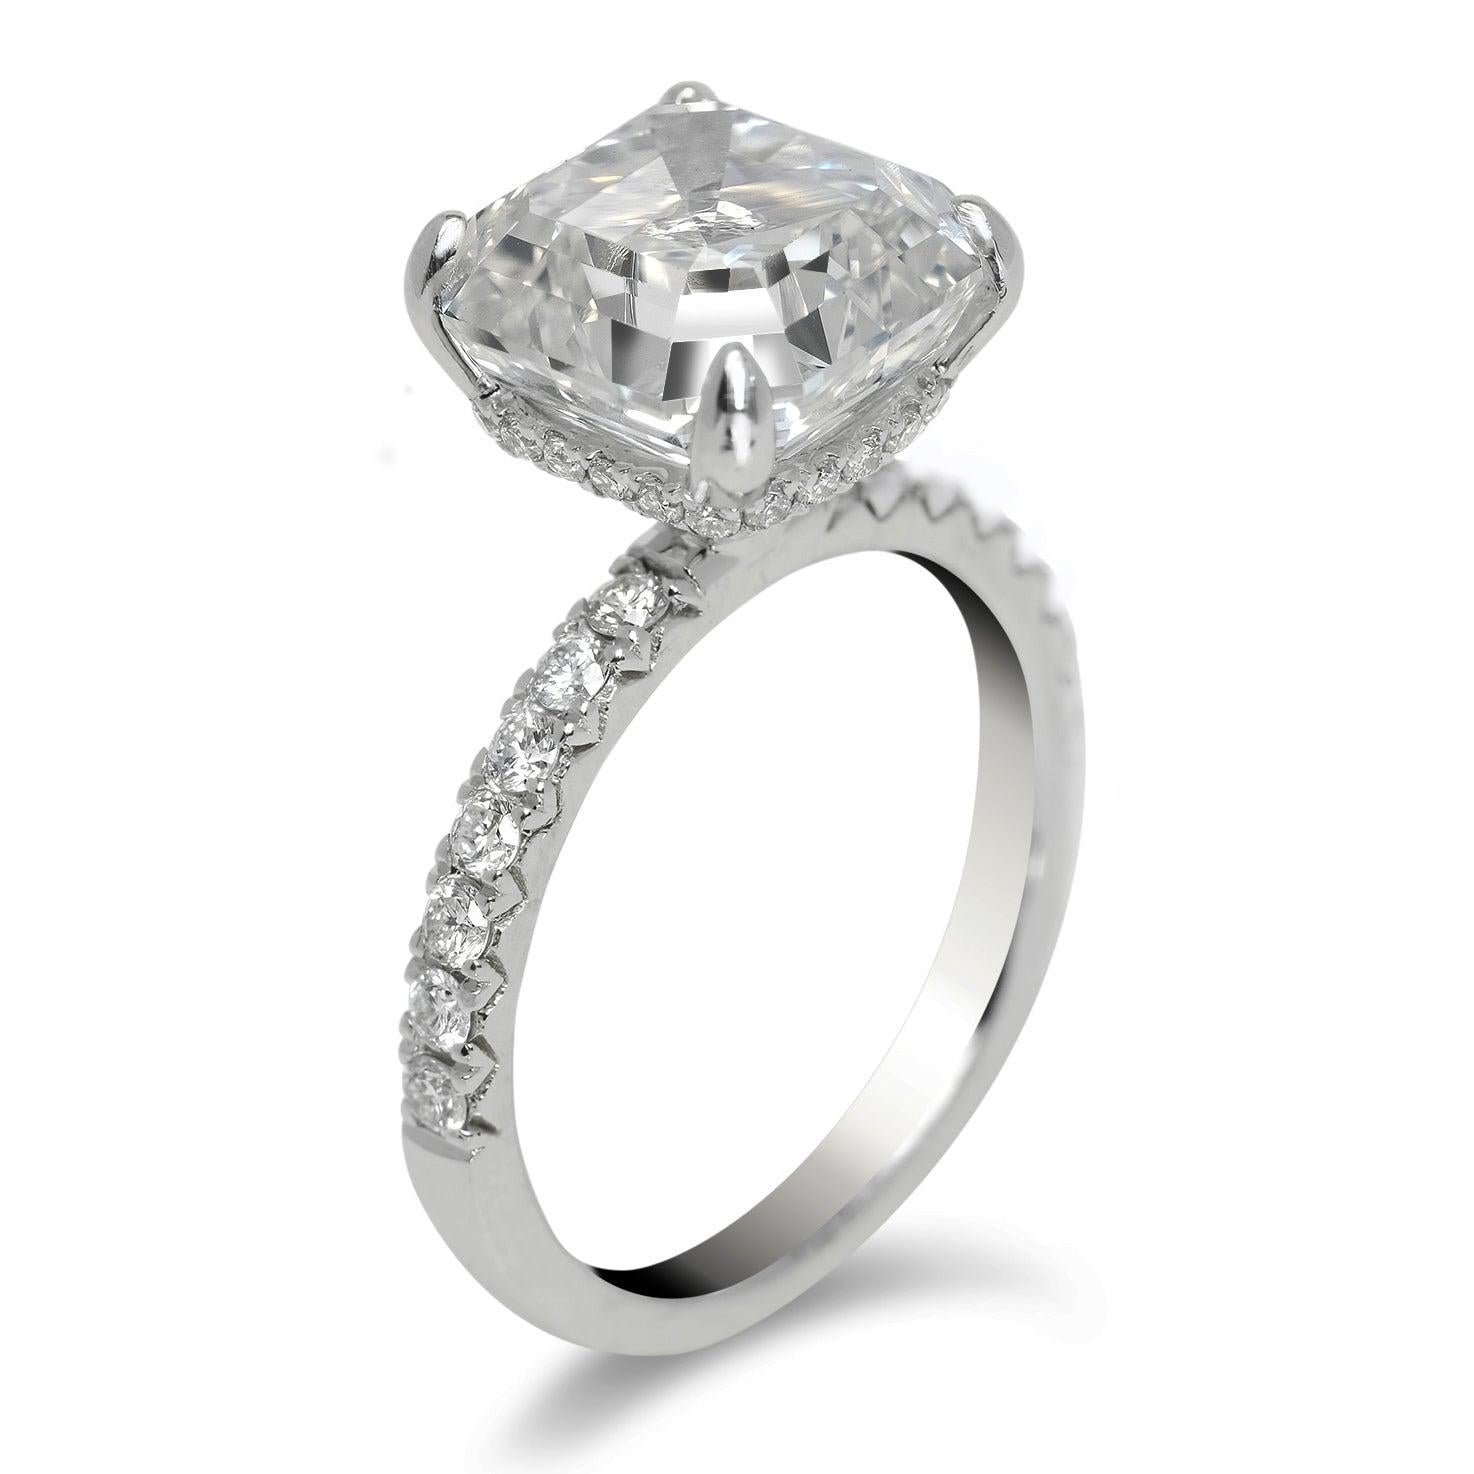 7 carat asscher cut diamond ring